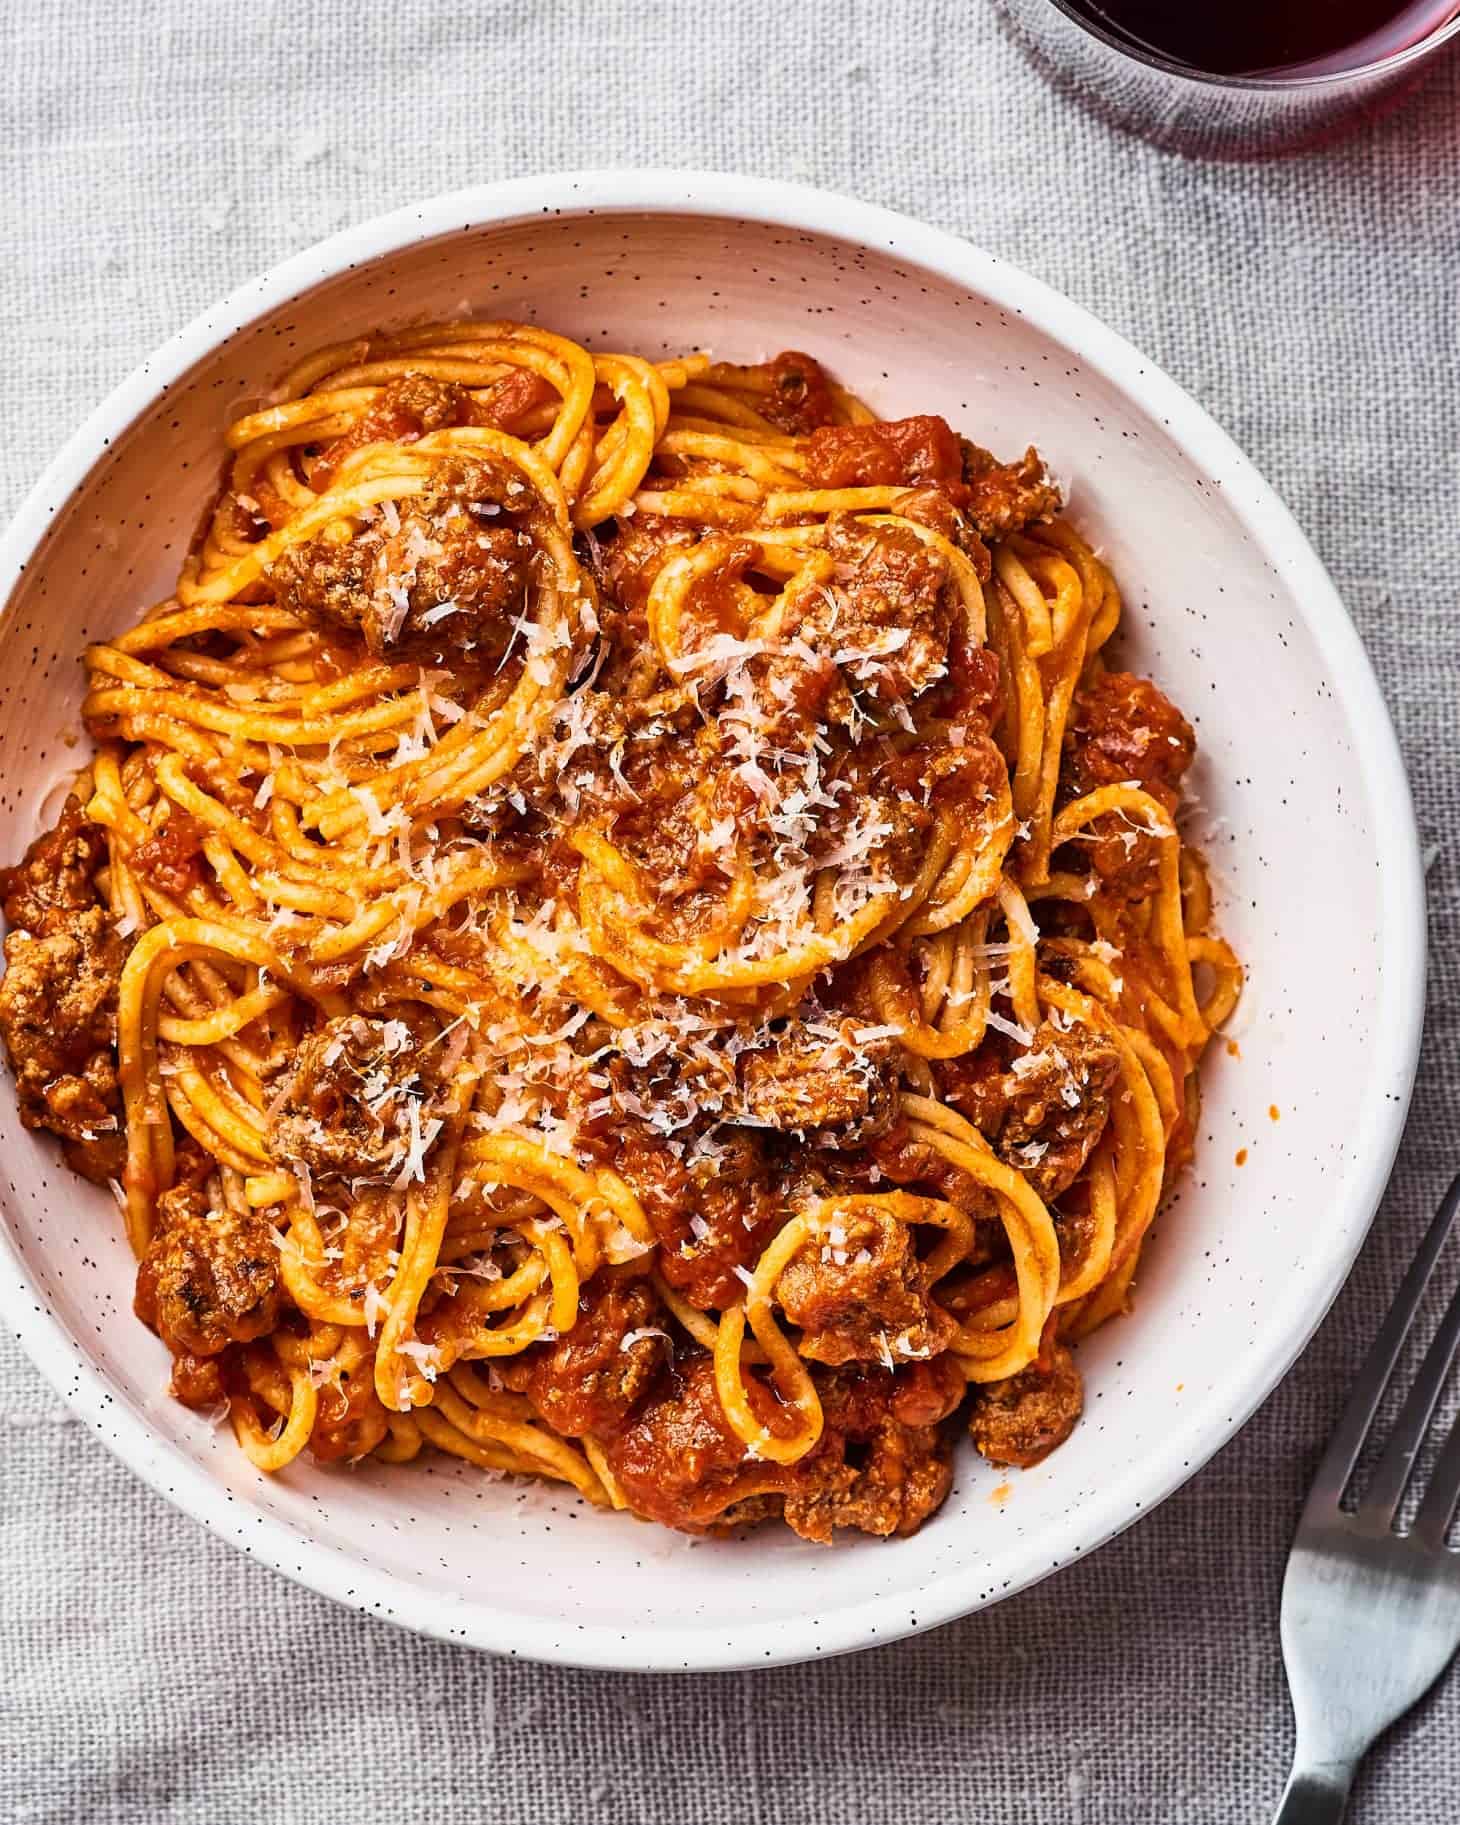 Instant pot spaghetti recipe